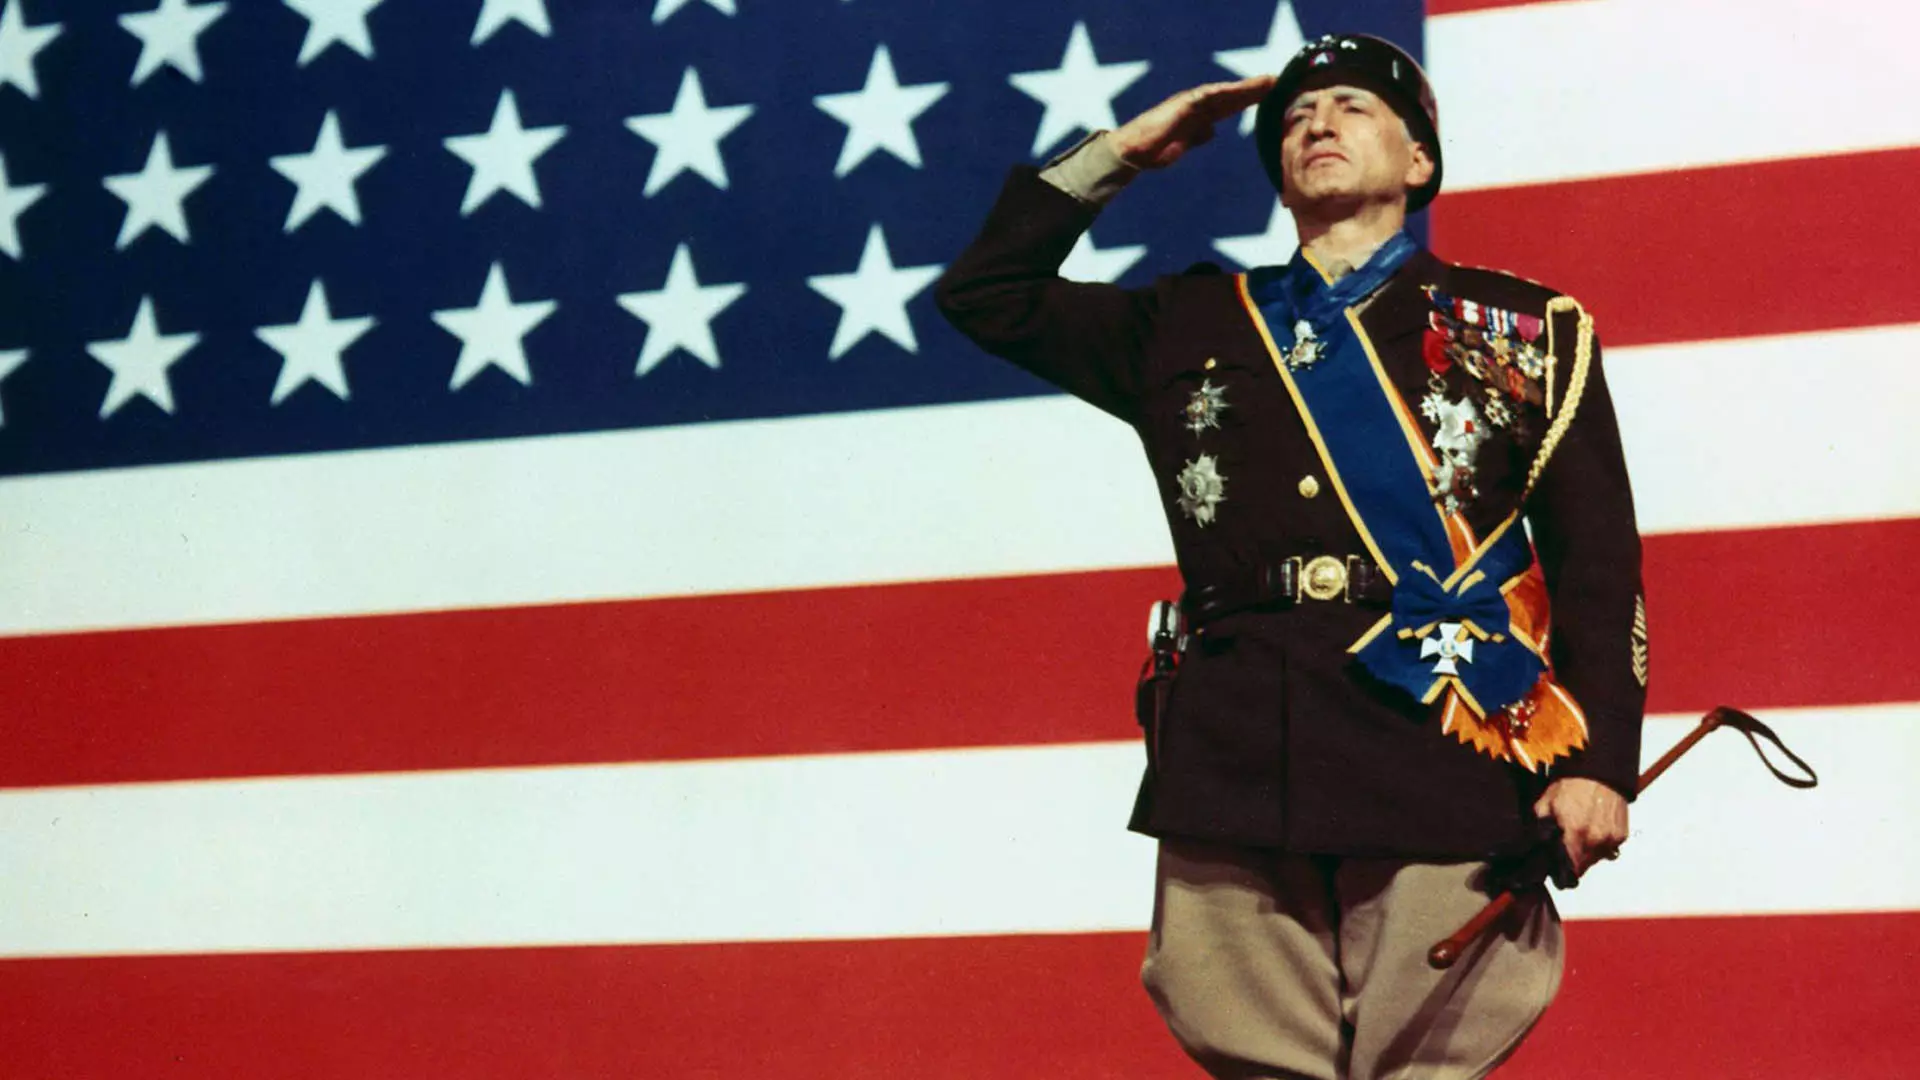 جورج سی اسکات با احترام نظامی مقابل پرچم آمریکا در فیلم Patton